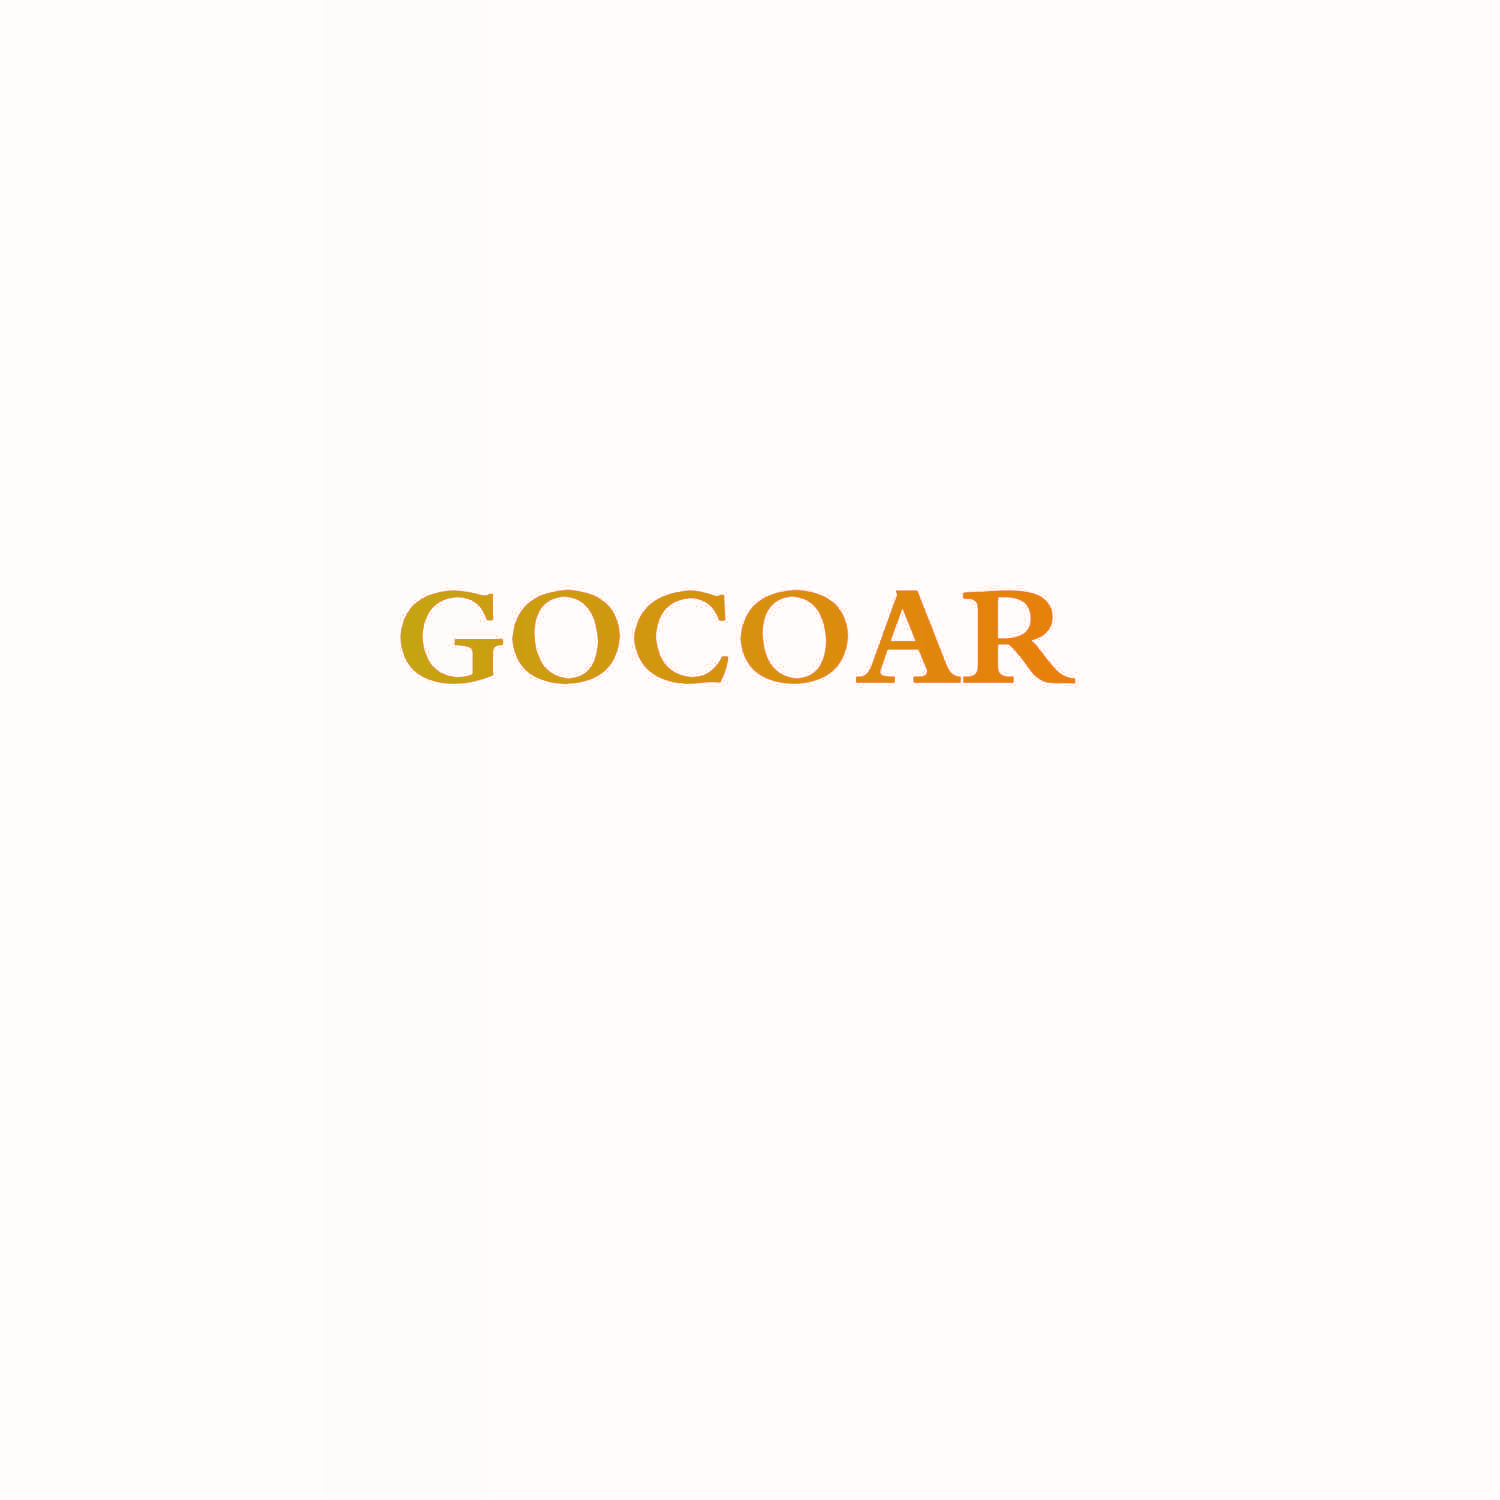 GOCOAR